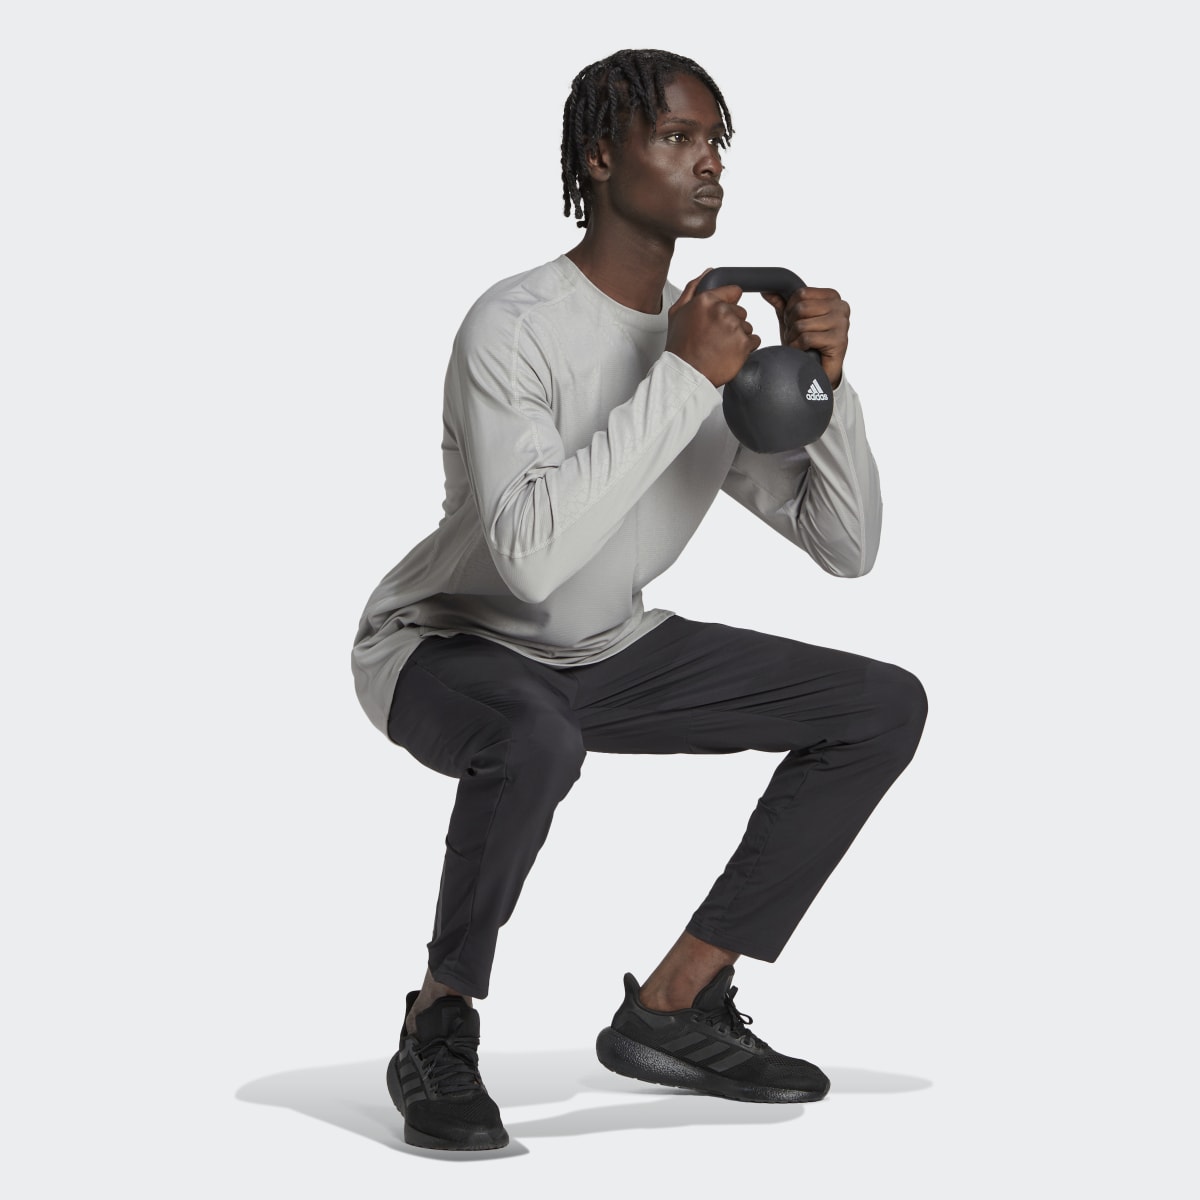 Adidas Workout PU Print Long-Sleeve Top. 5